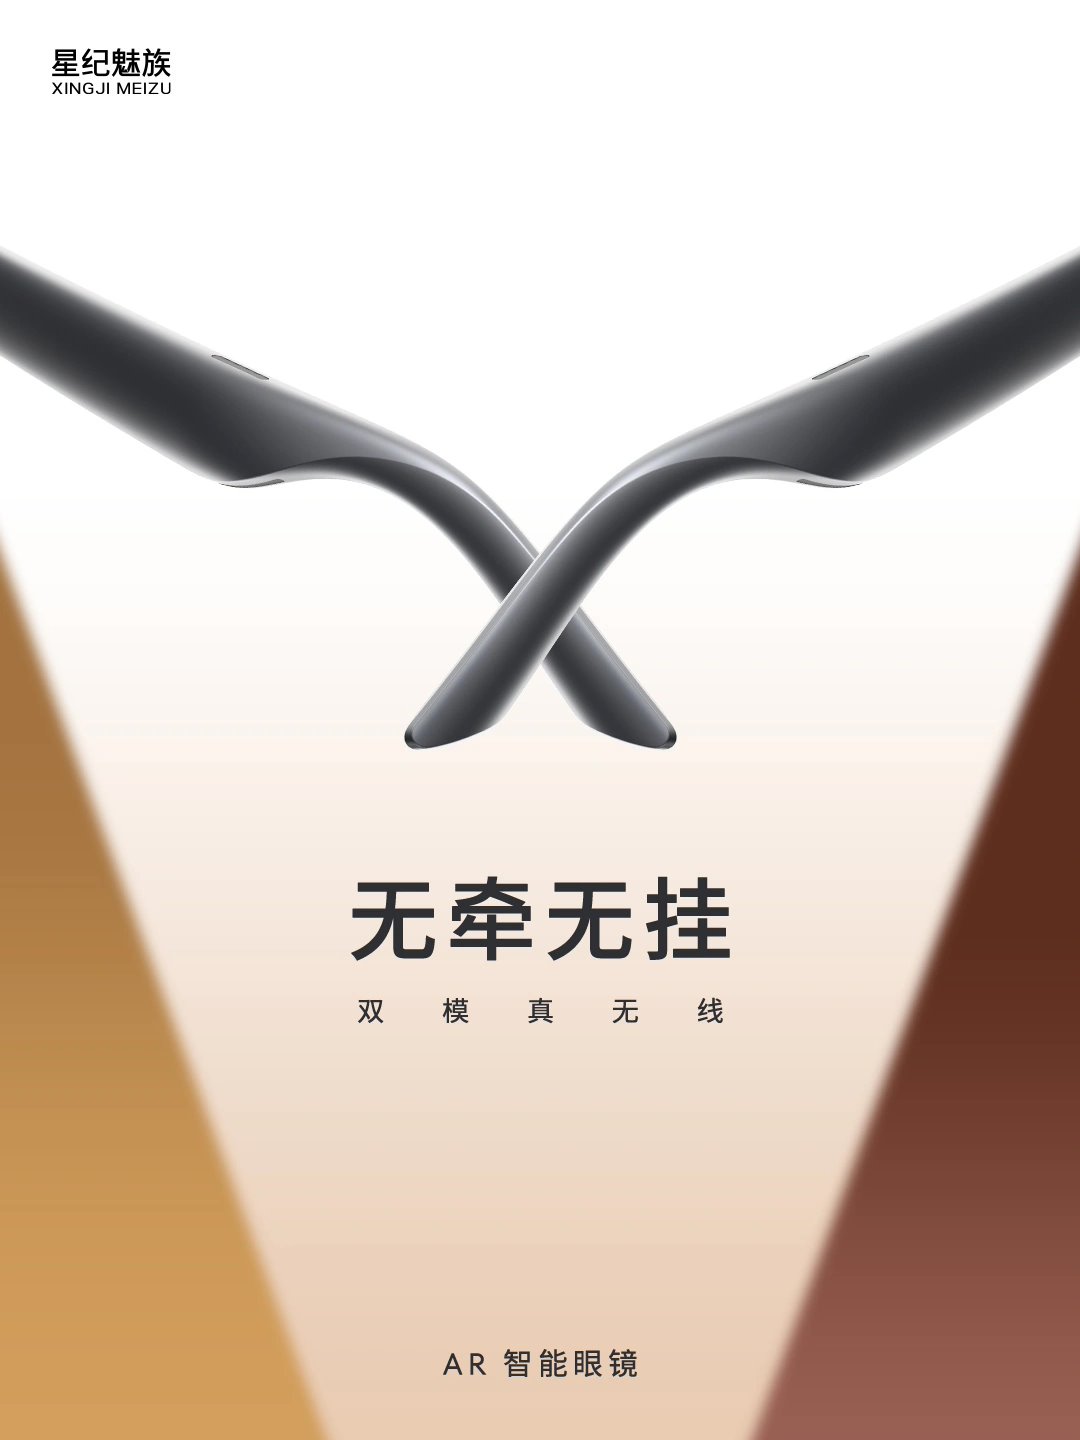 星纪魅族旗下XR品牌MYVU宣布首创全新FlymeAR交互系统